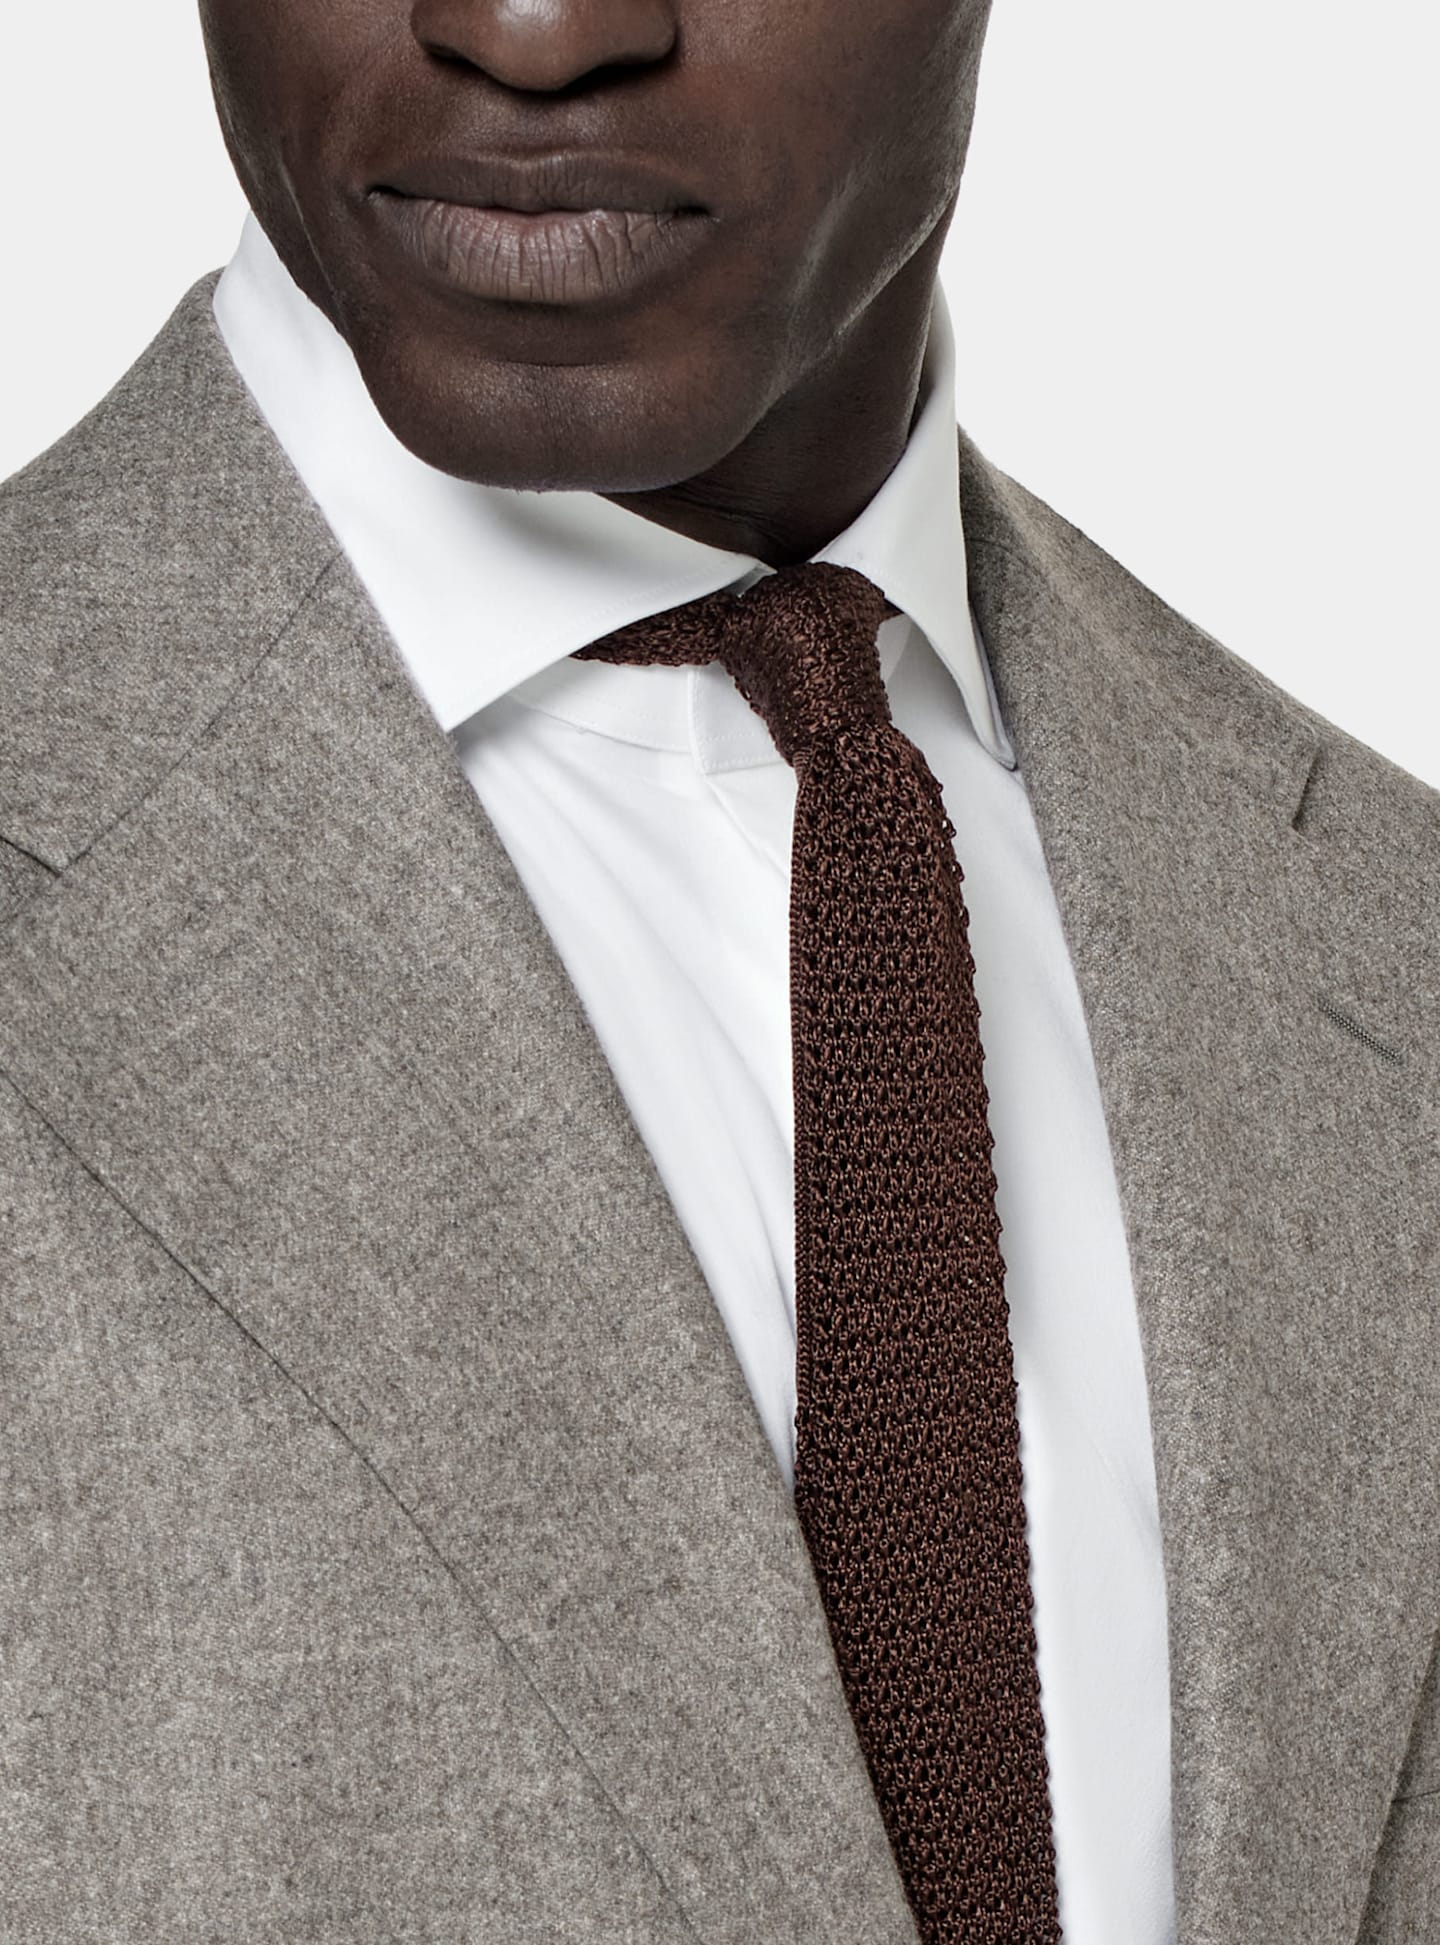 Detalj av grå enkelknäppt kostym med stickad brun sidenslips.